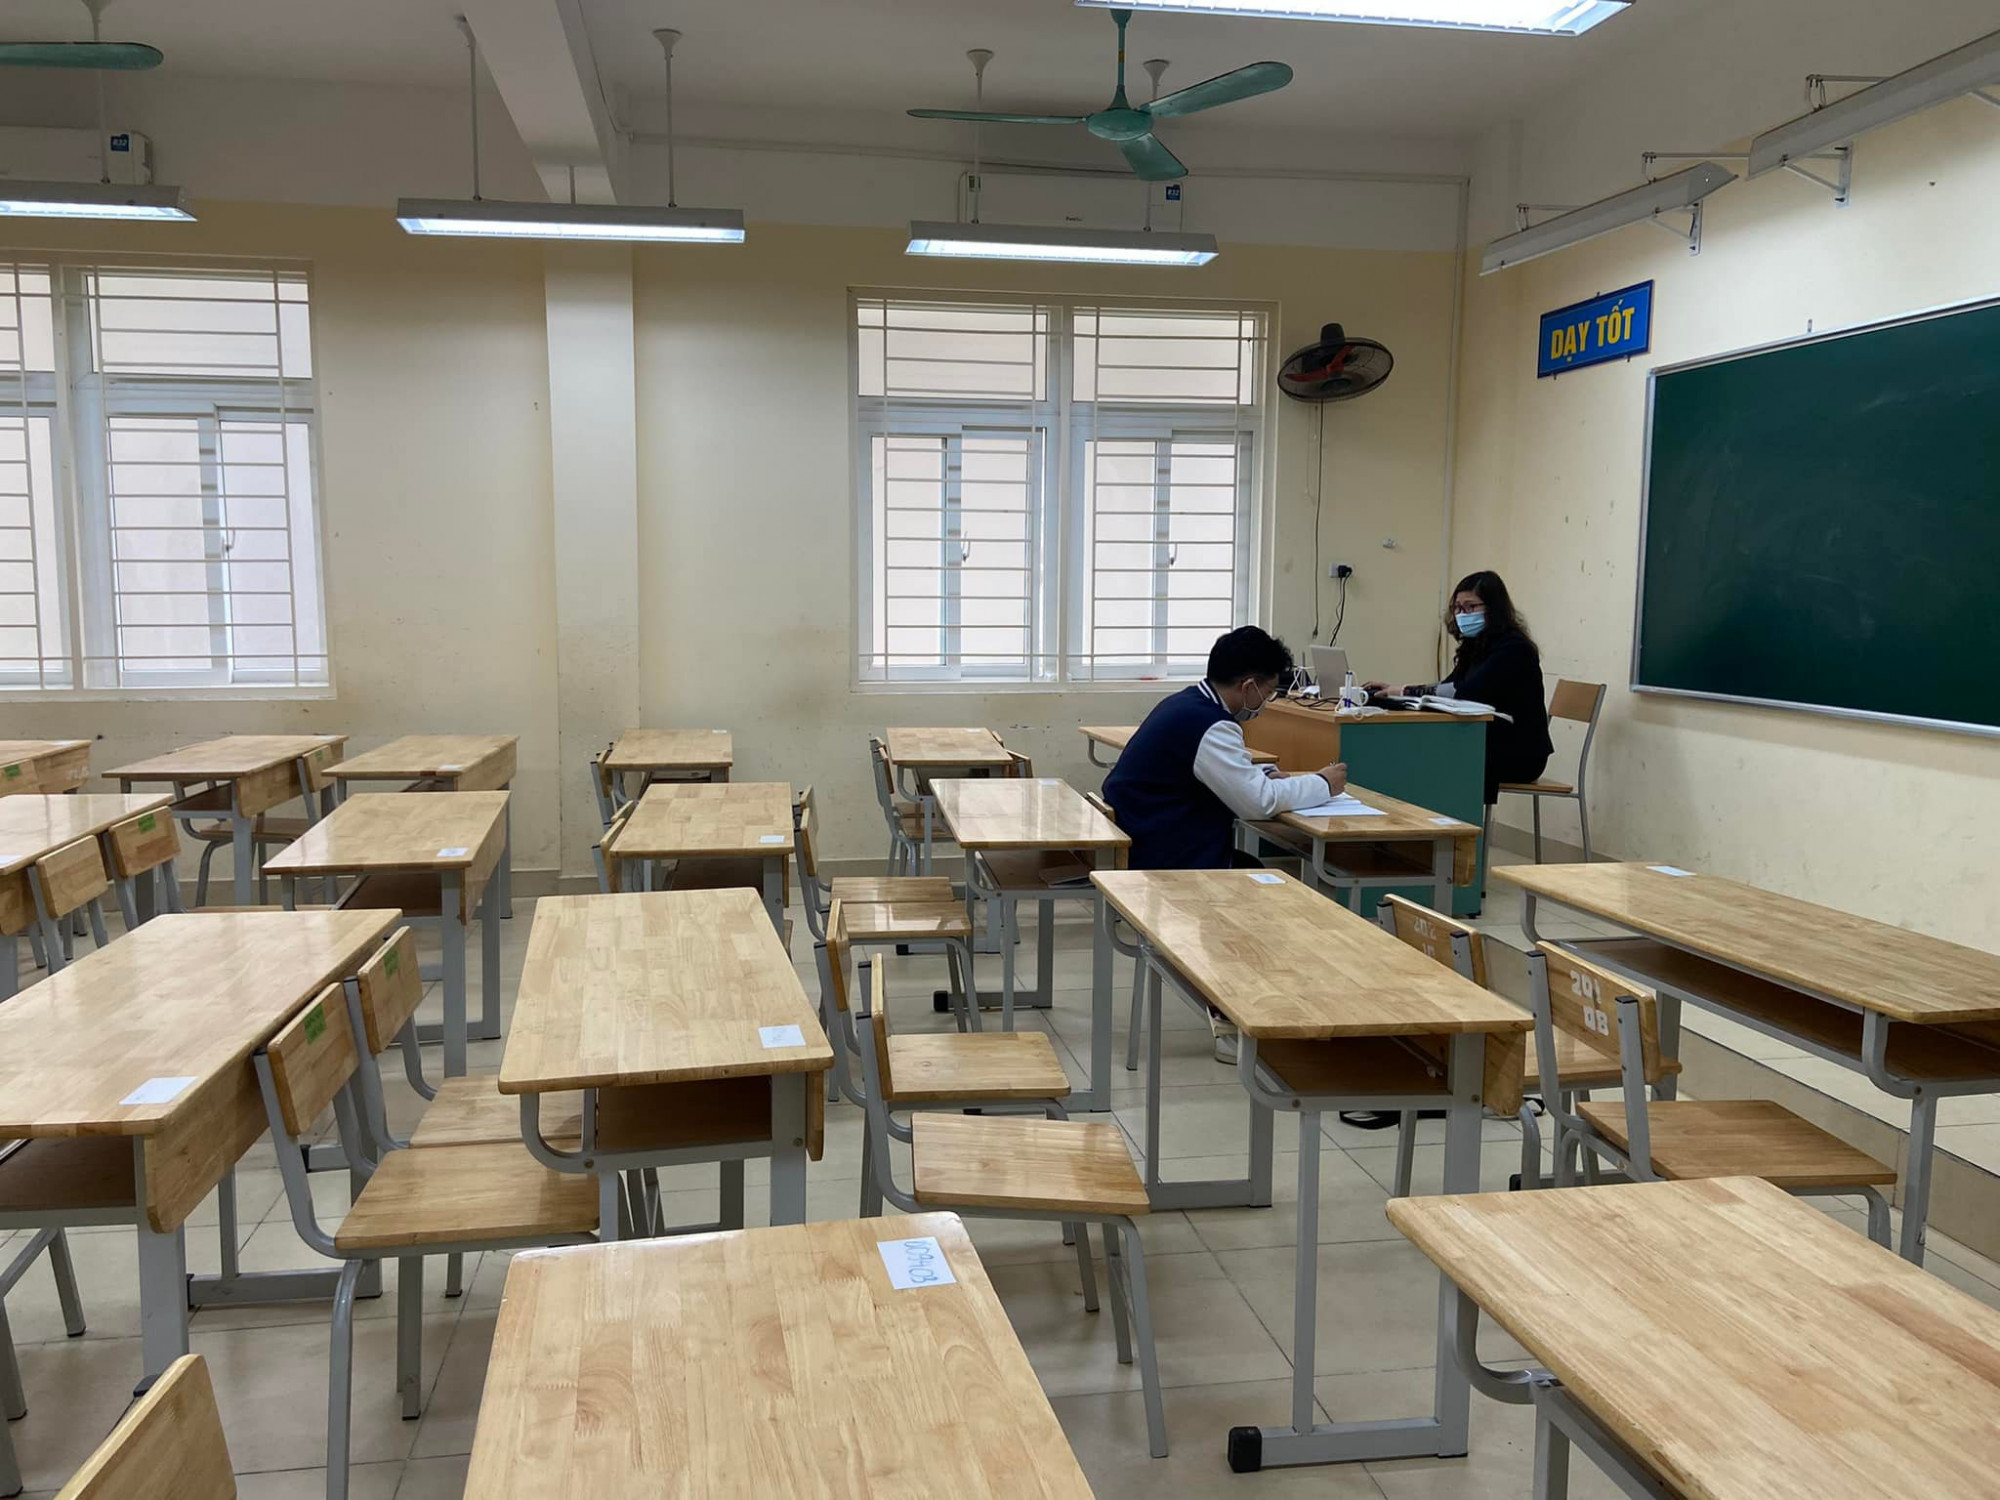 Sáng nay trường THPT Trần Nhân Tông chỉ có 1 học sinh đến trường